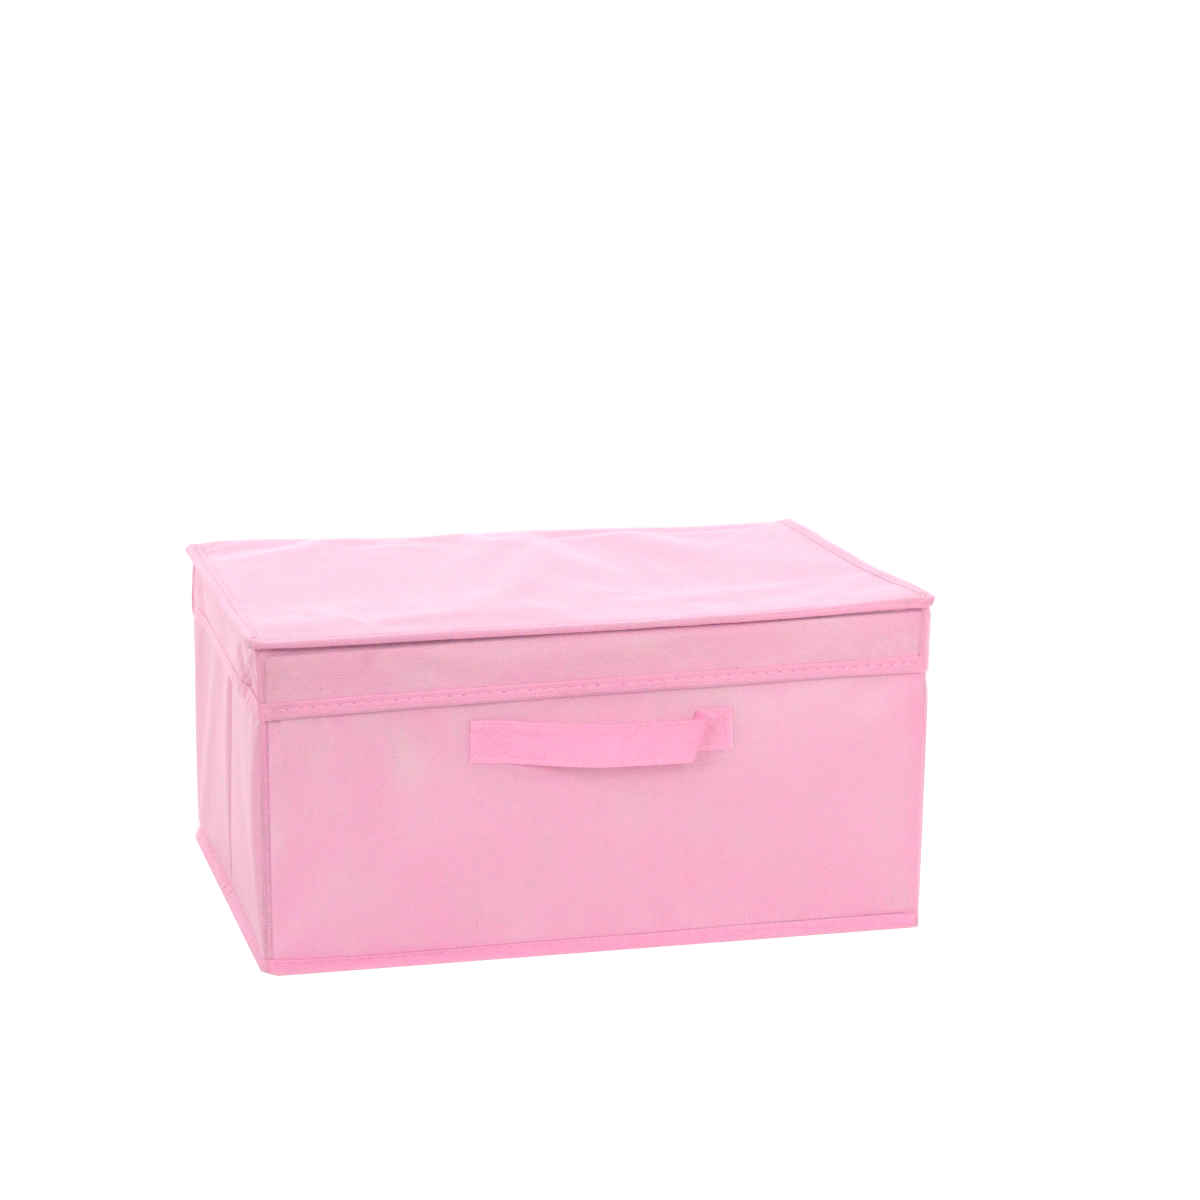 Sandy dubbellaag Afleiding Opbergdoos Textiel 40X30X20 cm Roze Opbergbox voor kleding €8,99 -  VacuumzakOnline.nl | Vacuumzakken koop je online